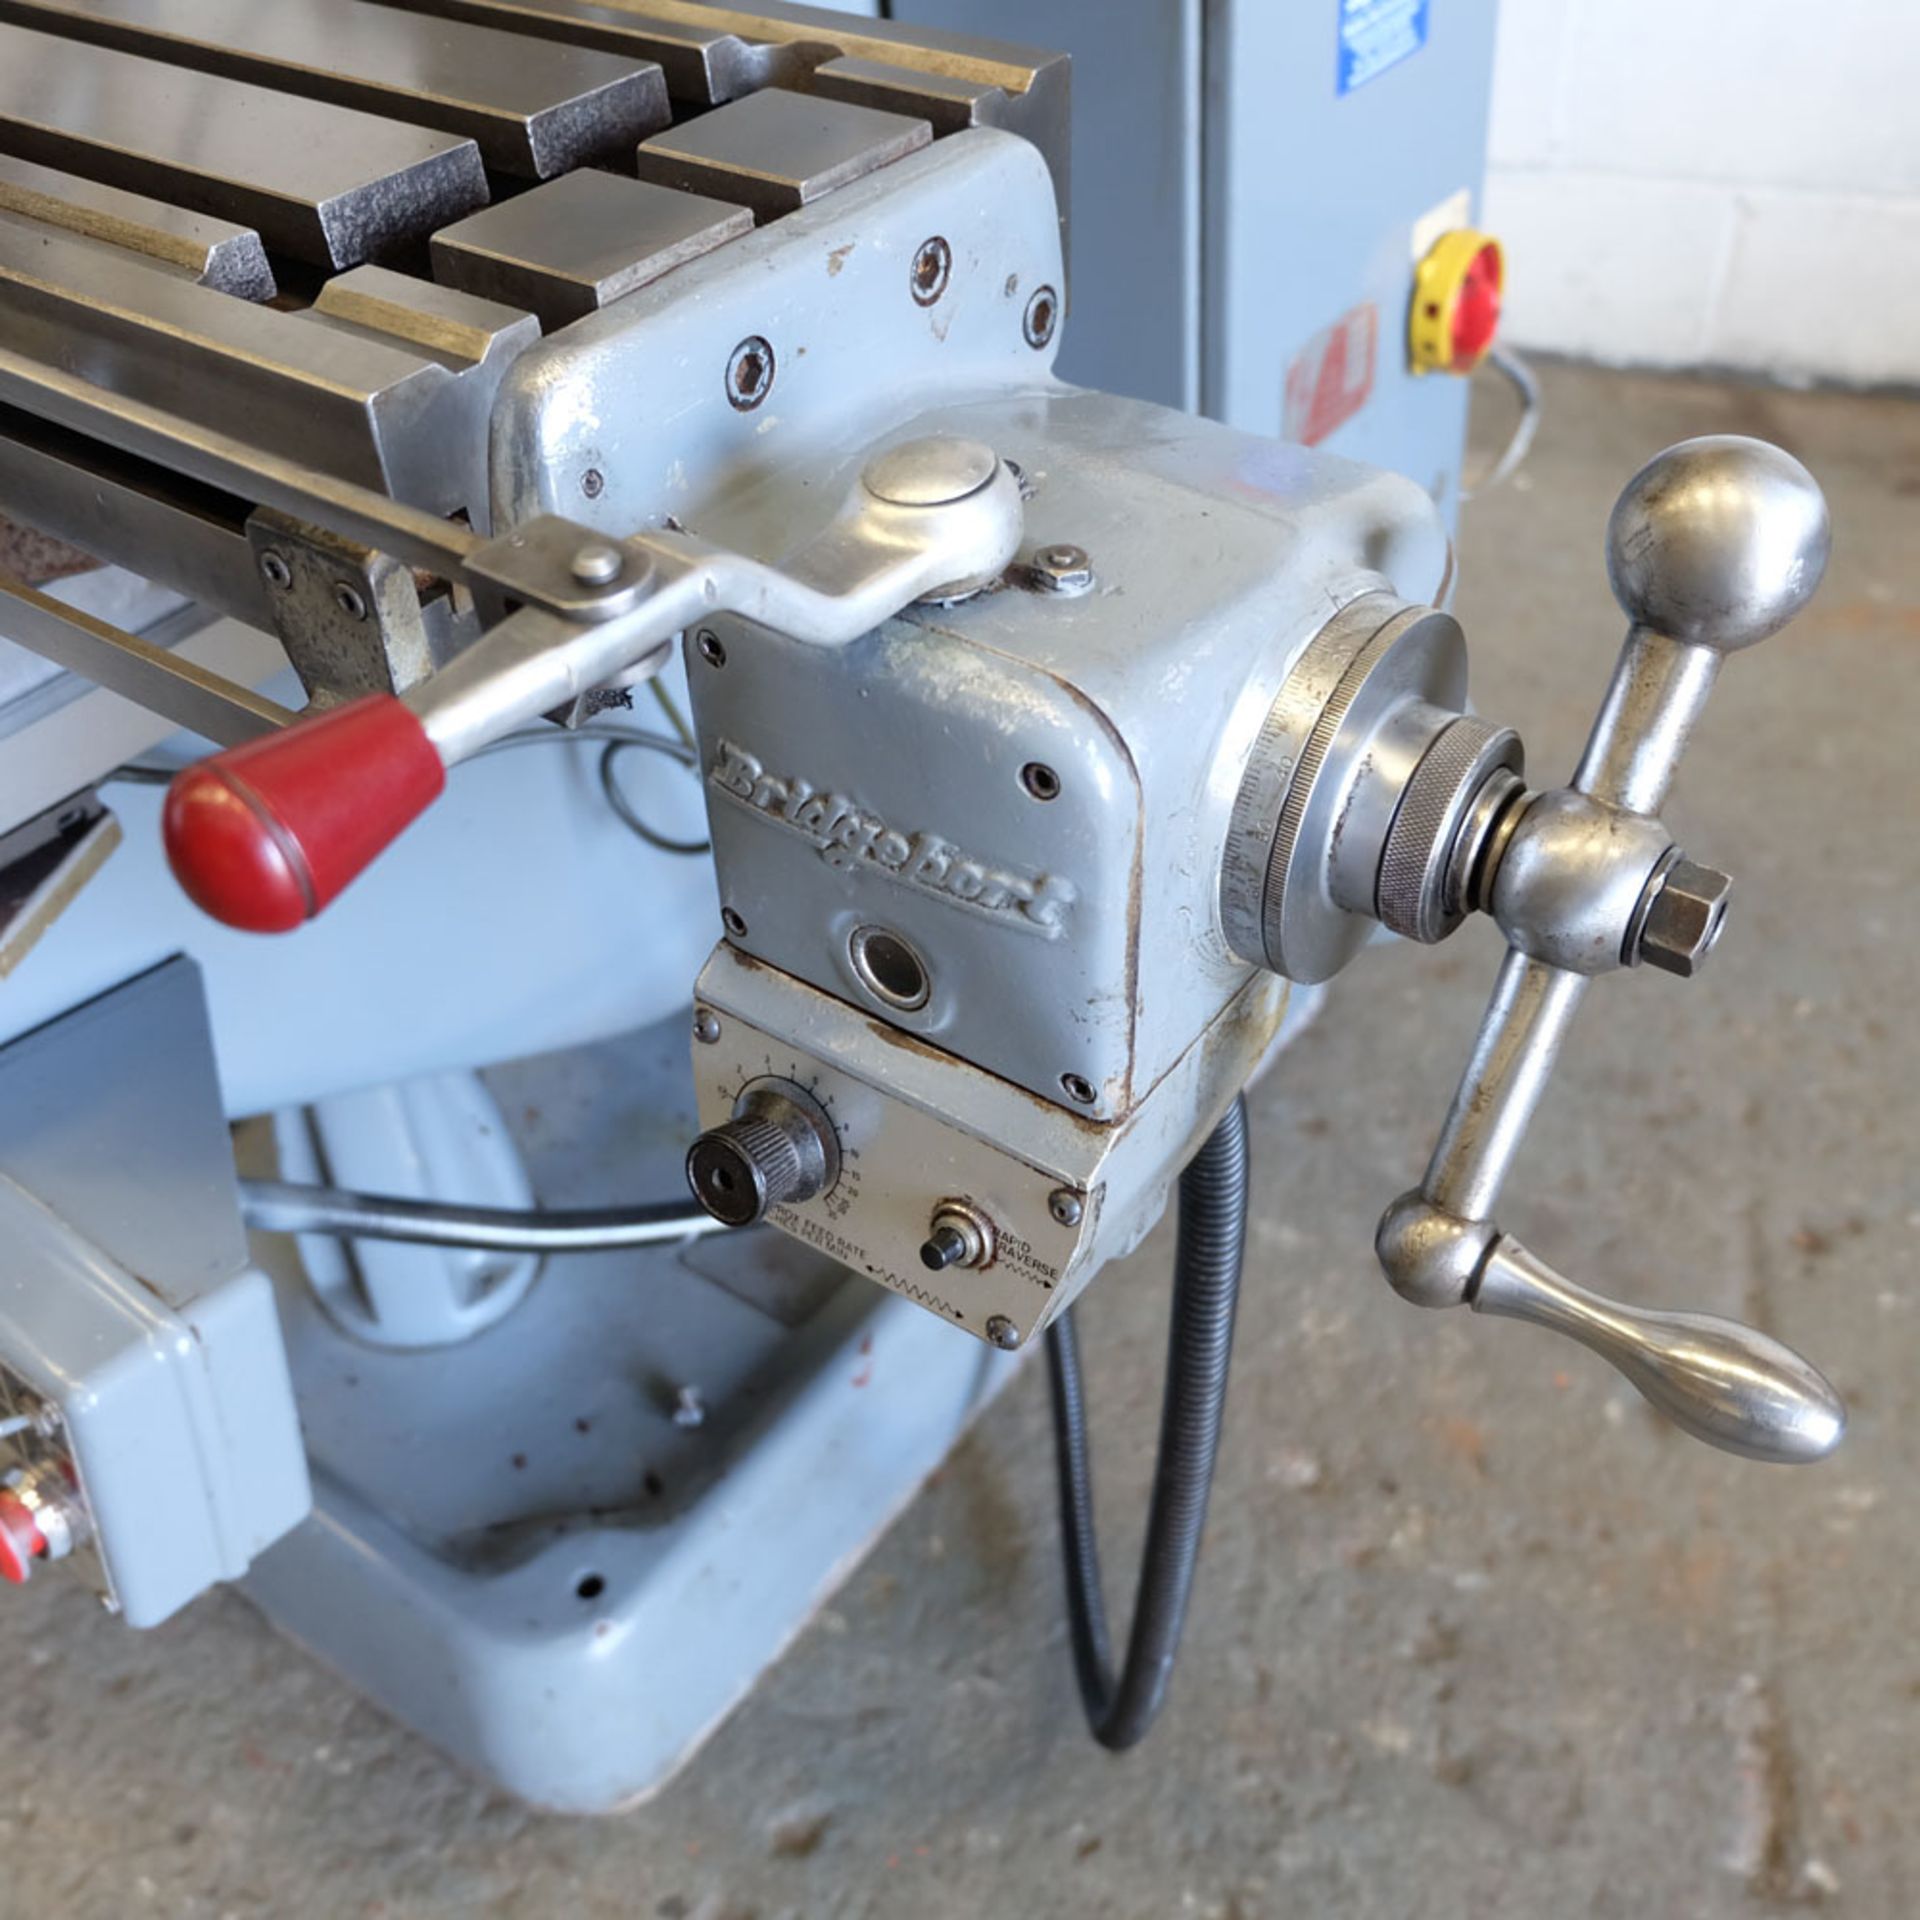 Bridgeport Variable Speed Tool Room Turret Milling Machine. - Image 2 of 12